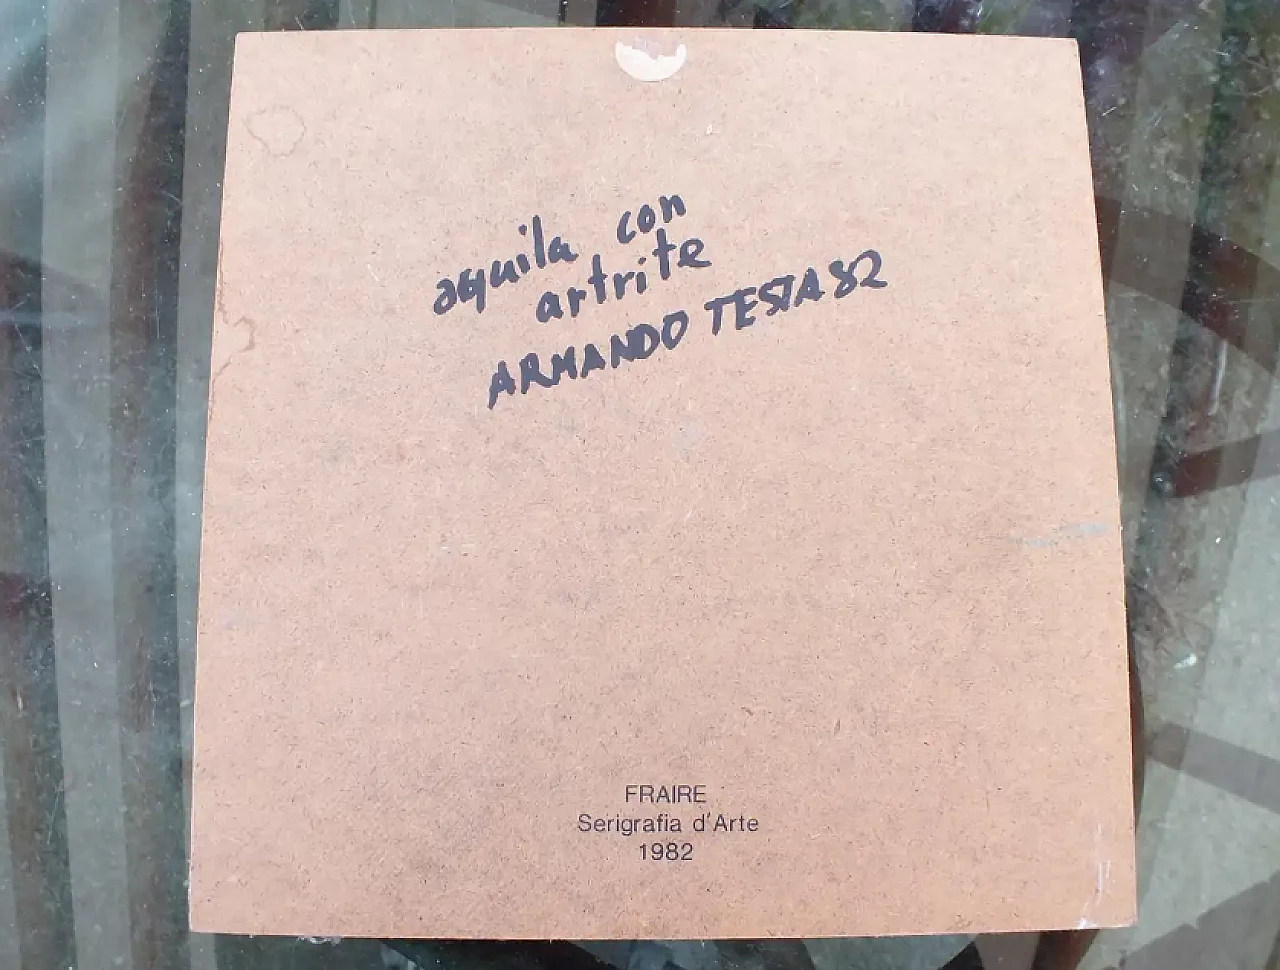 Aquila con artrite, serigrafia di Armando Testa, anni '80 2